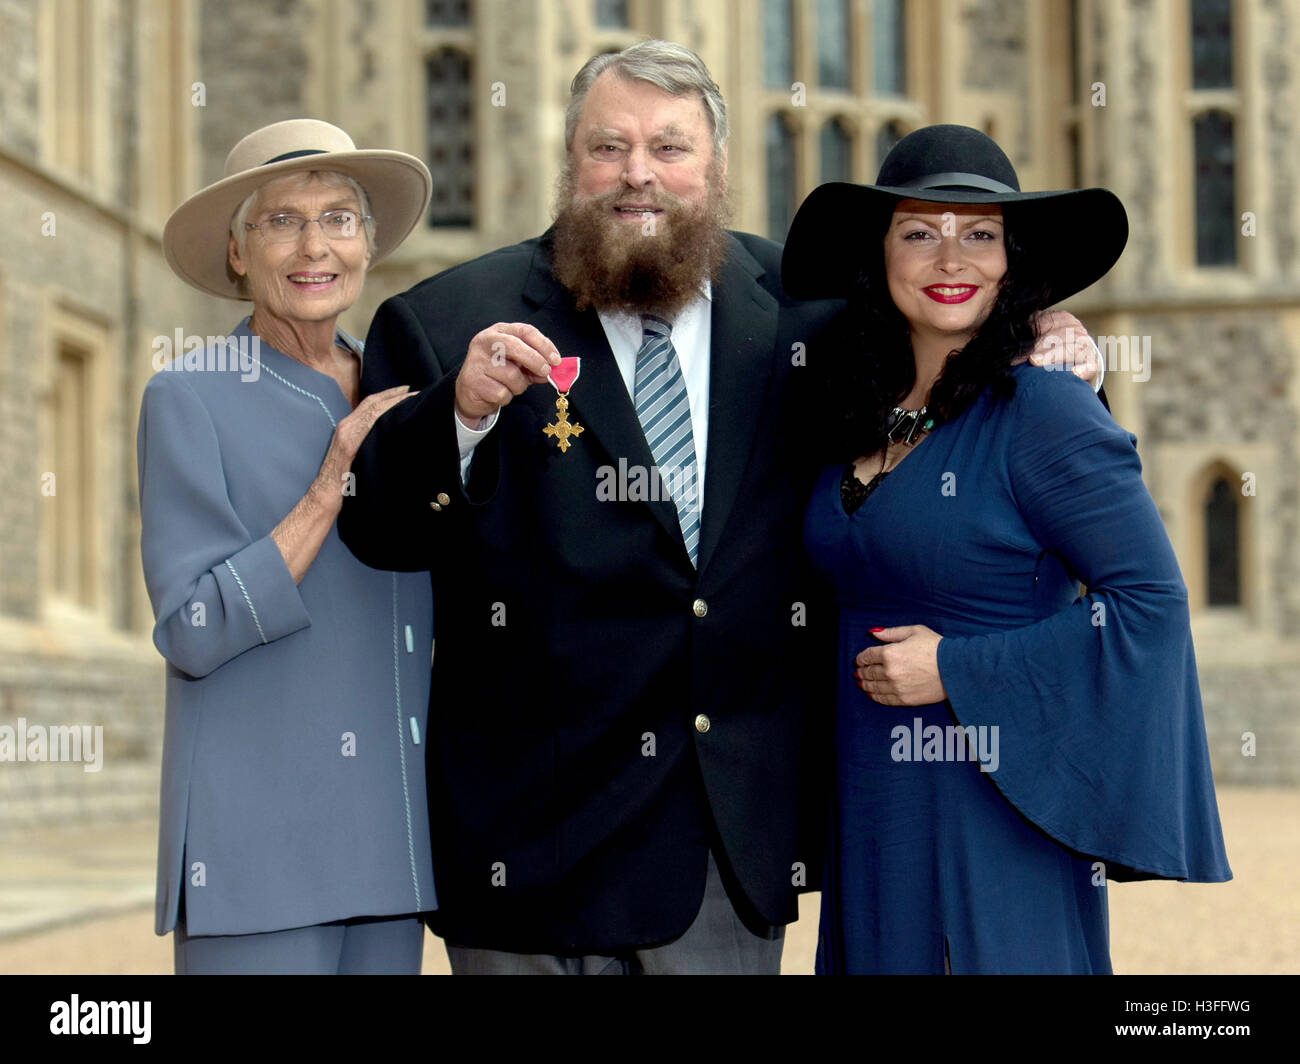 Acteur brian blessed, avec sa femme Hildegard et sa fille Rosalind, après qu'il est fait officier de l'ordre de l'Empire britannique (OBE) par la reine Elizabeth II lors d'une cérémonie au Château de Windsor. Banque D'Images